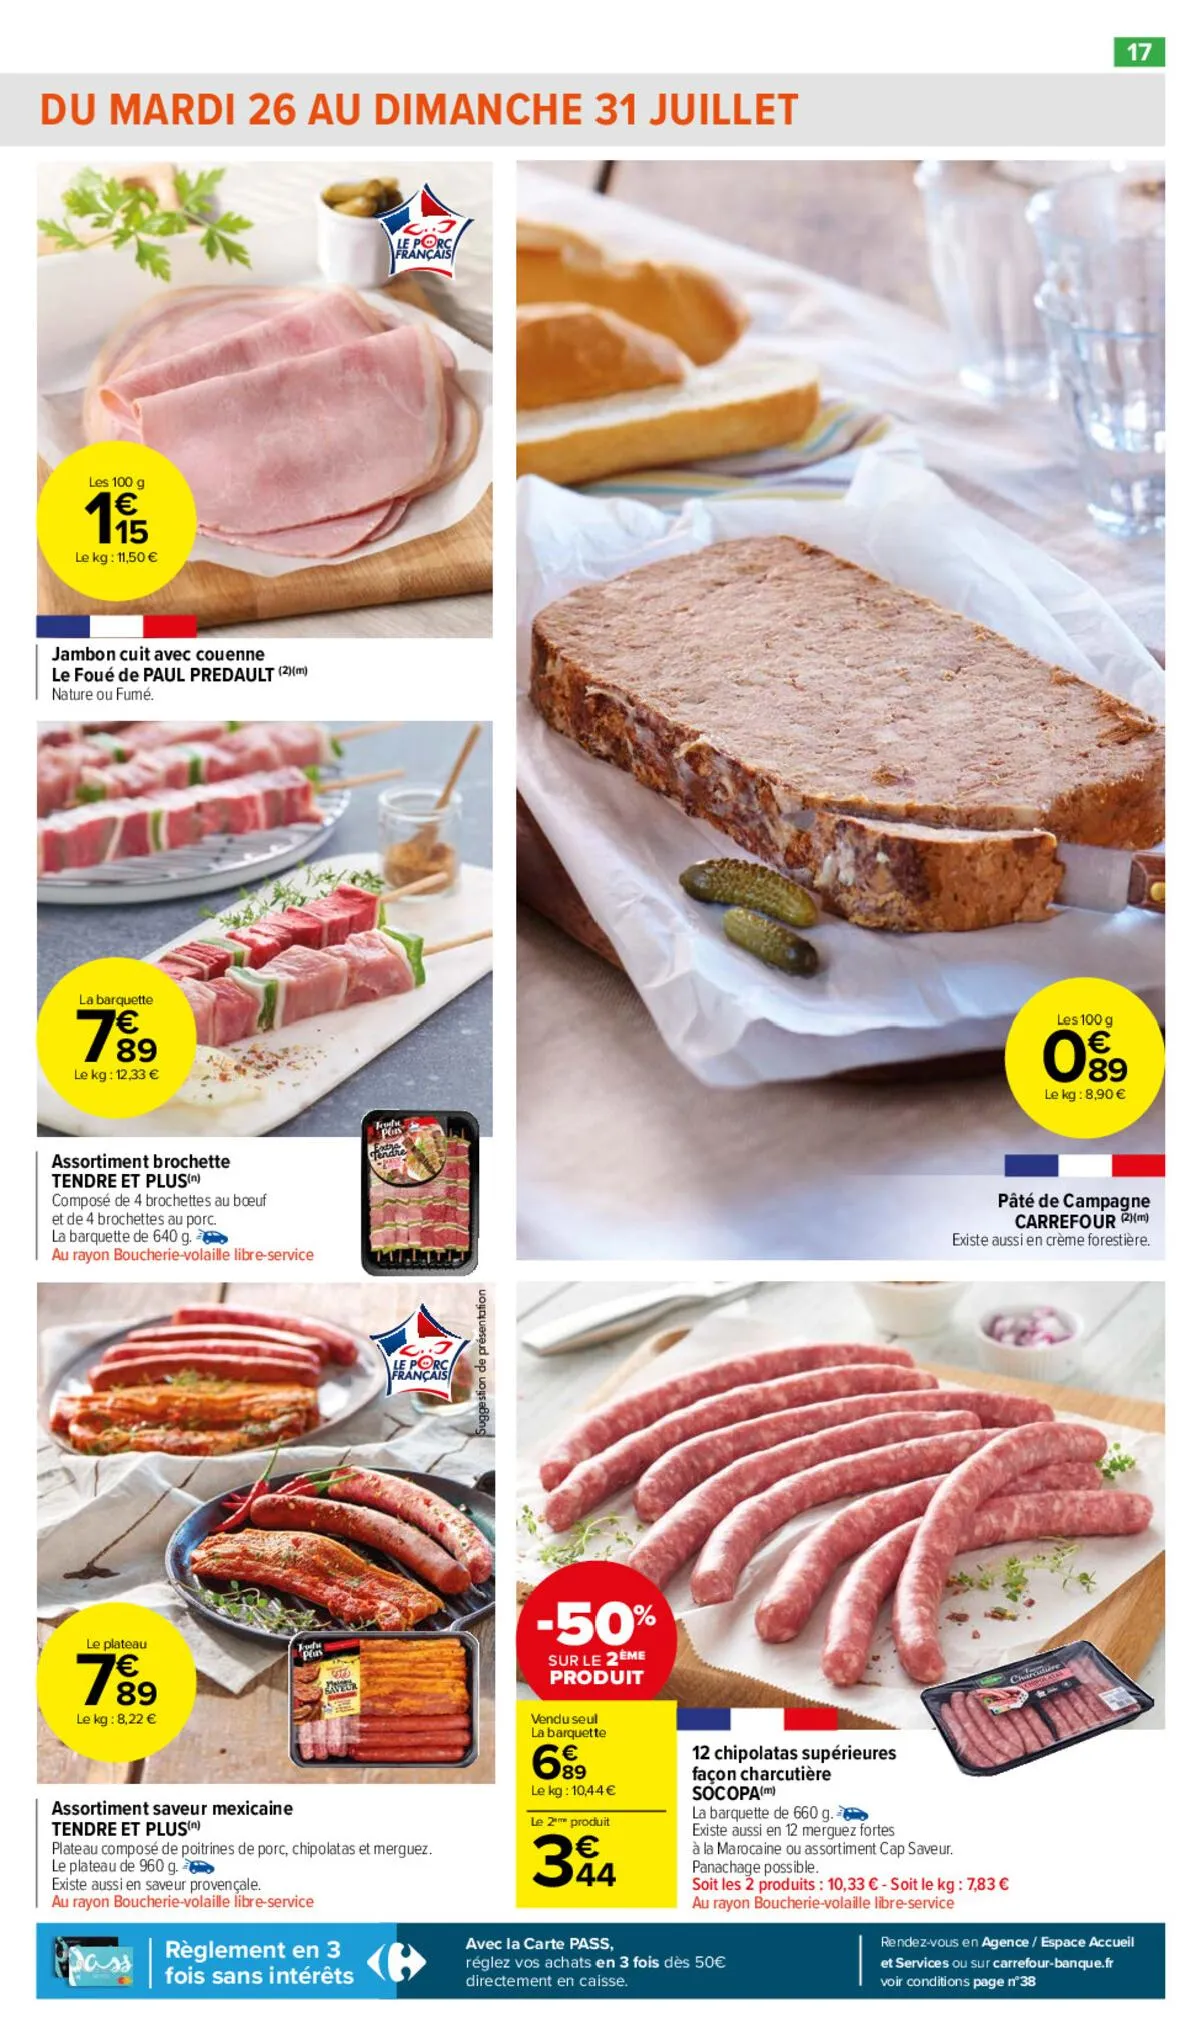 Catalogue Le bon goût à petits prix !, page 00017